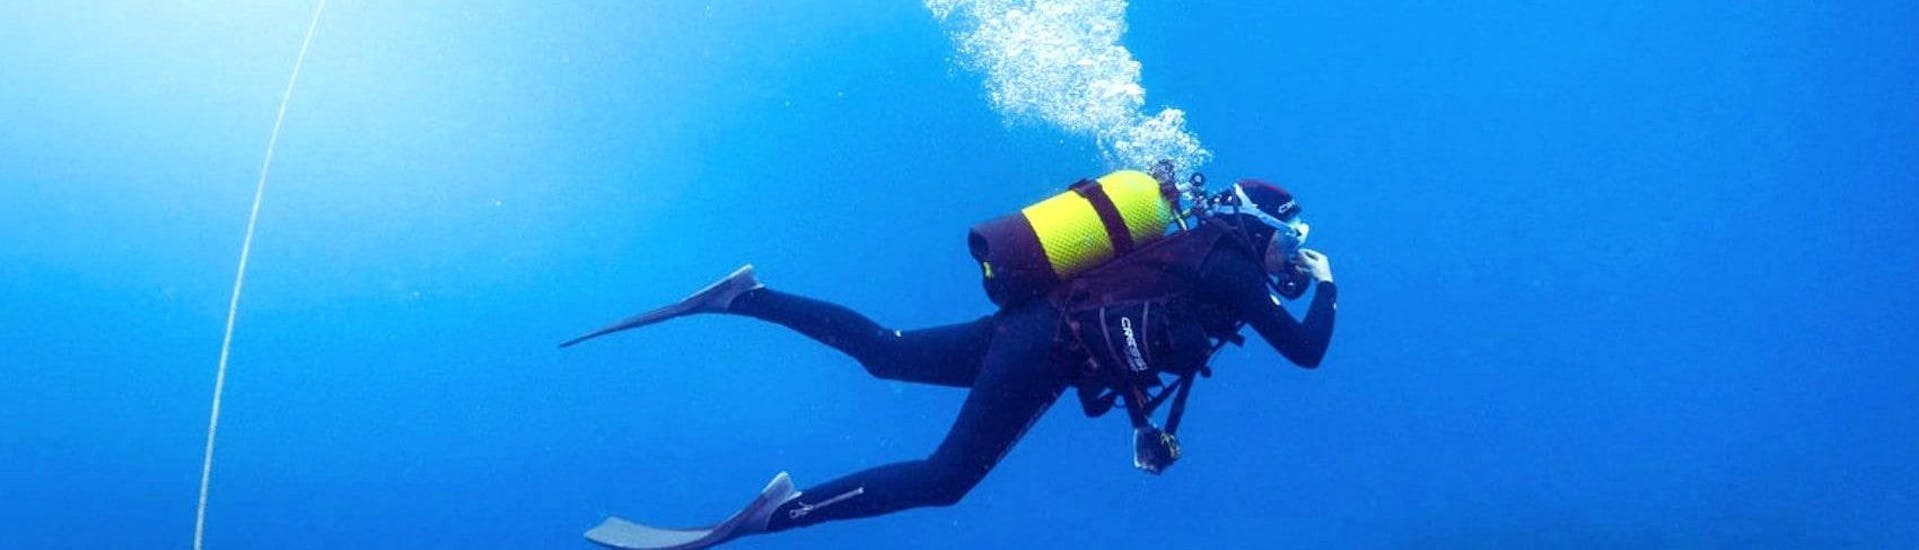 Un plongeur plonge en totale autonomie grâce à sa Formation plongée SSI Scuba Diver pour Débutants avec BeFree2Dive.